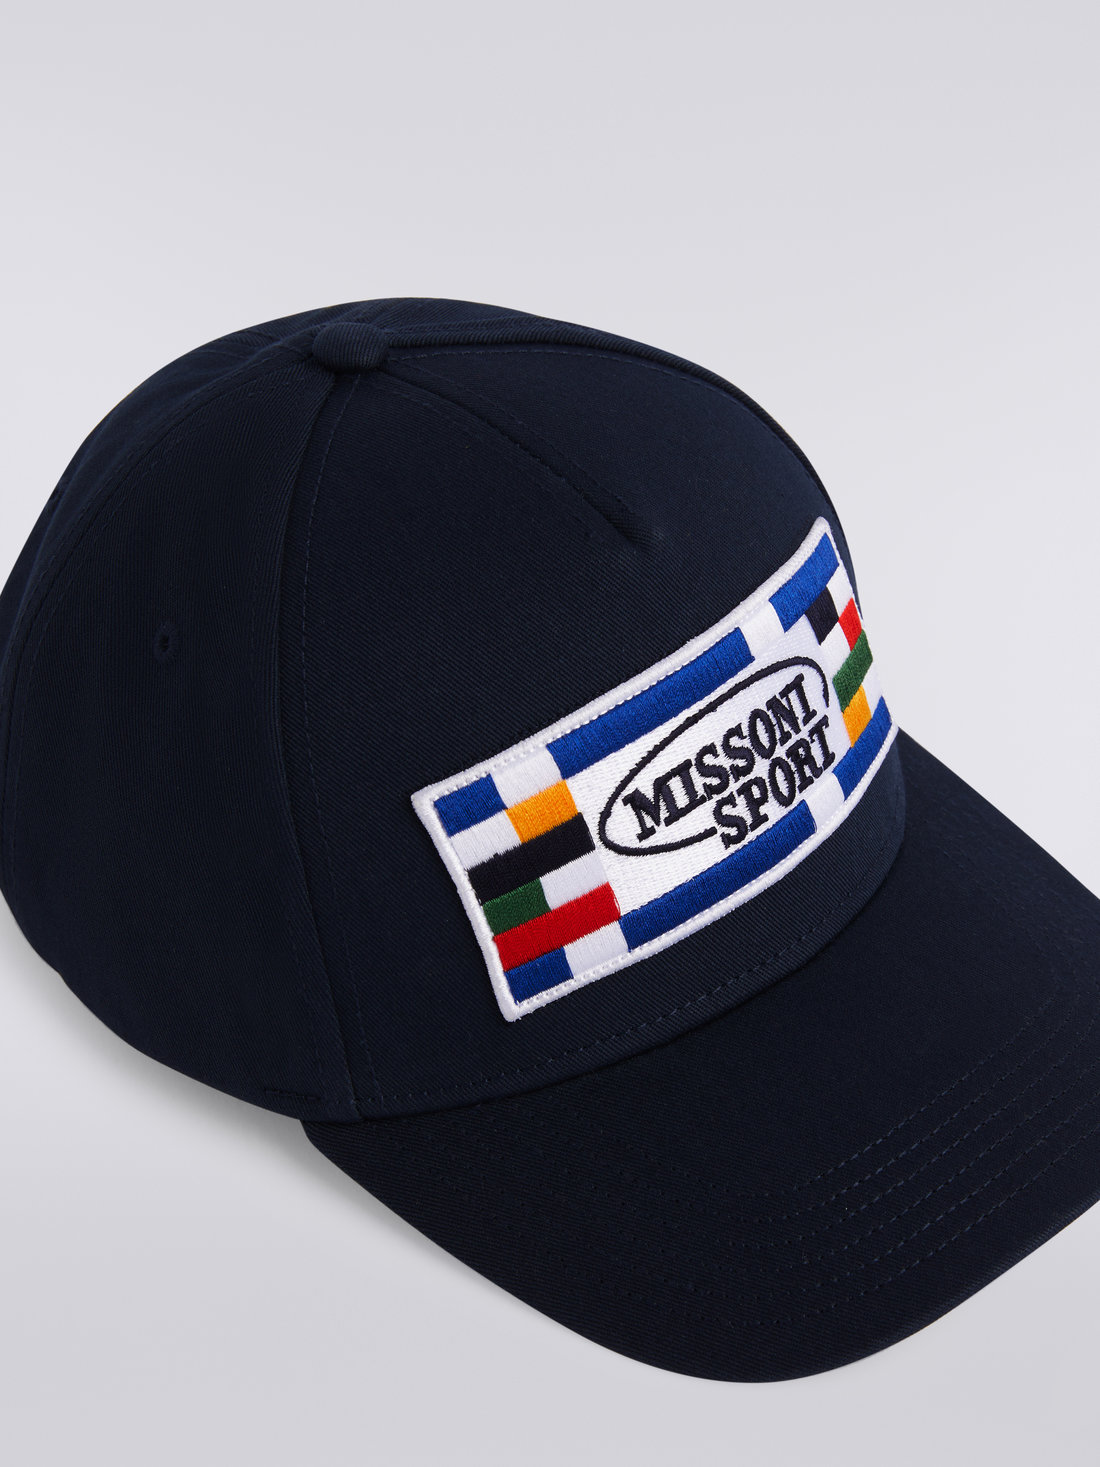 Cotton baseball cap with logo, Navy Blue - 8051575742972 - 2